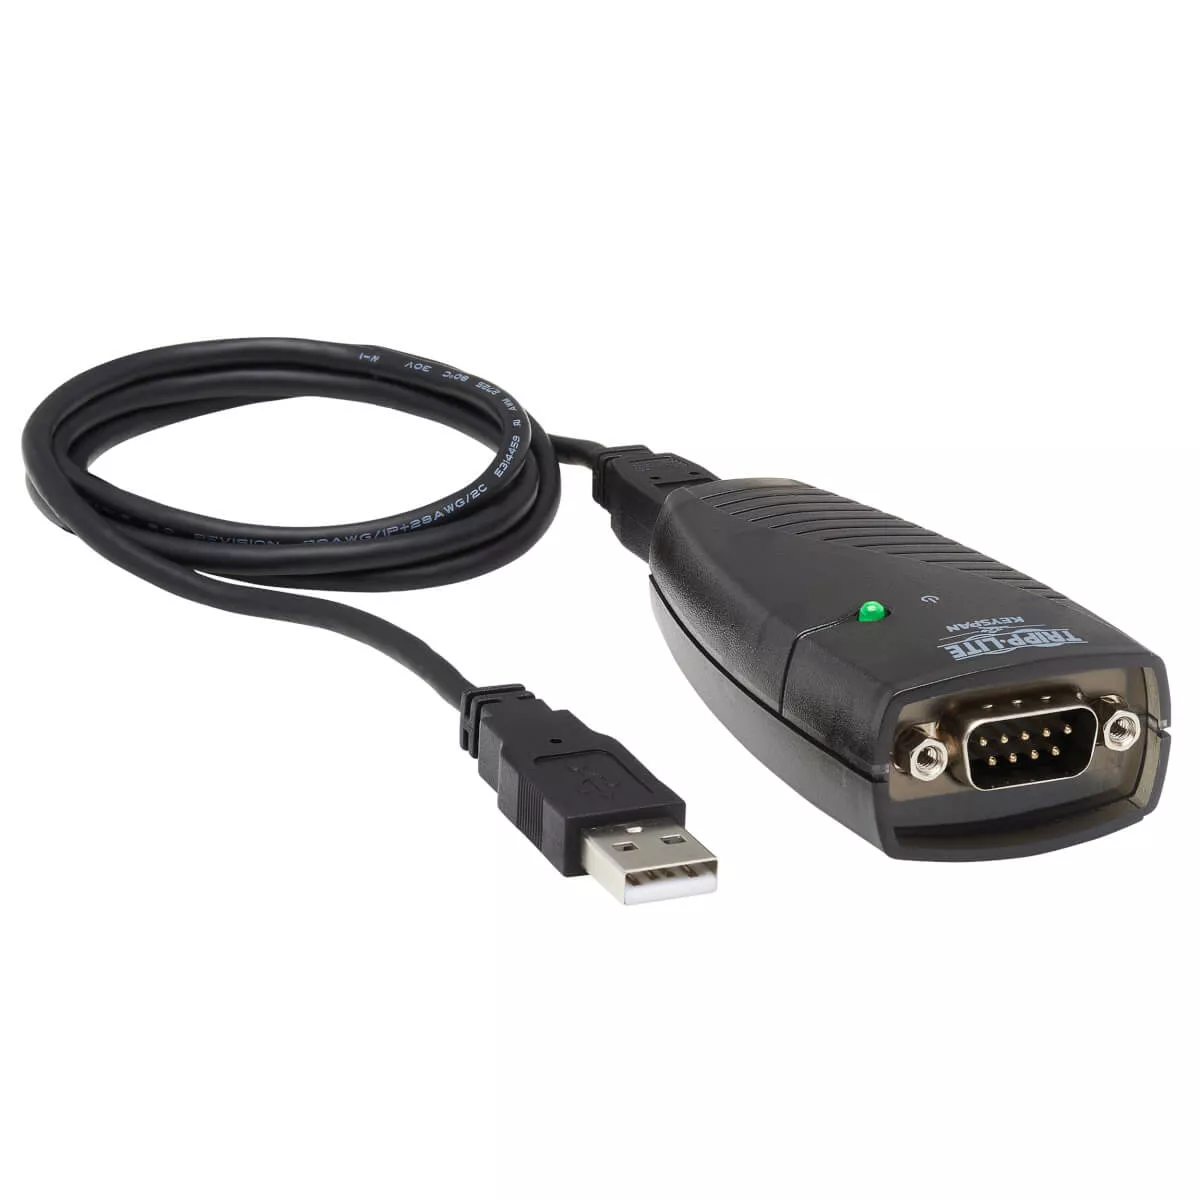 Revendeur officiel Tripp Lite Adaptateur USB haute vitesse vers série Keyspan